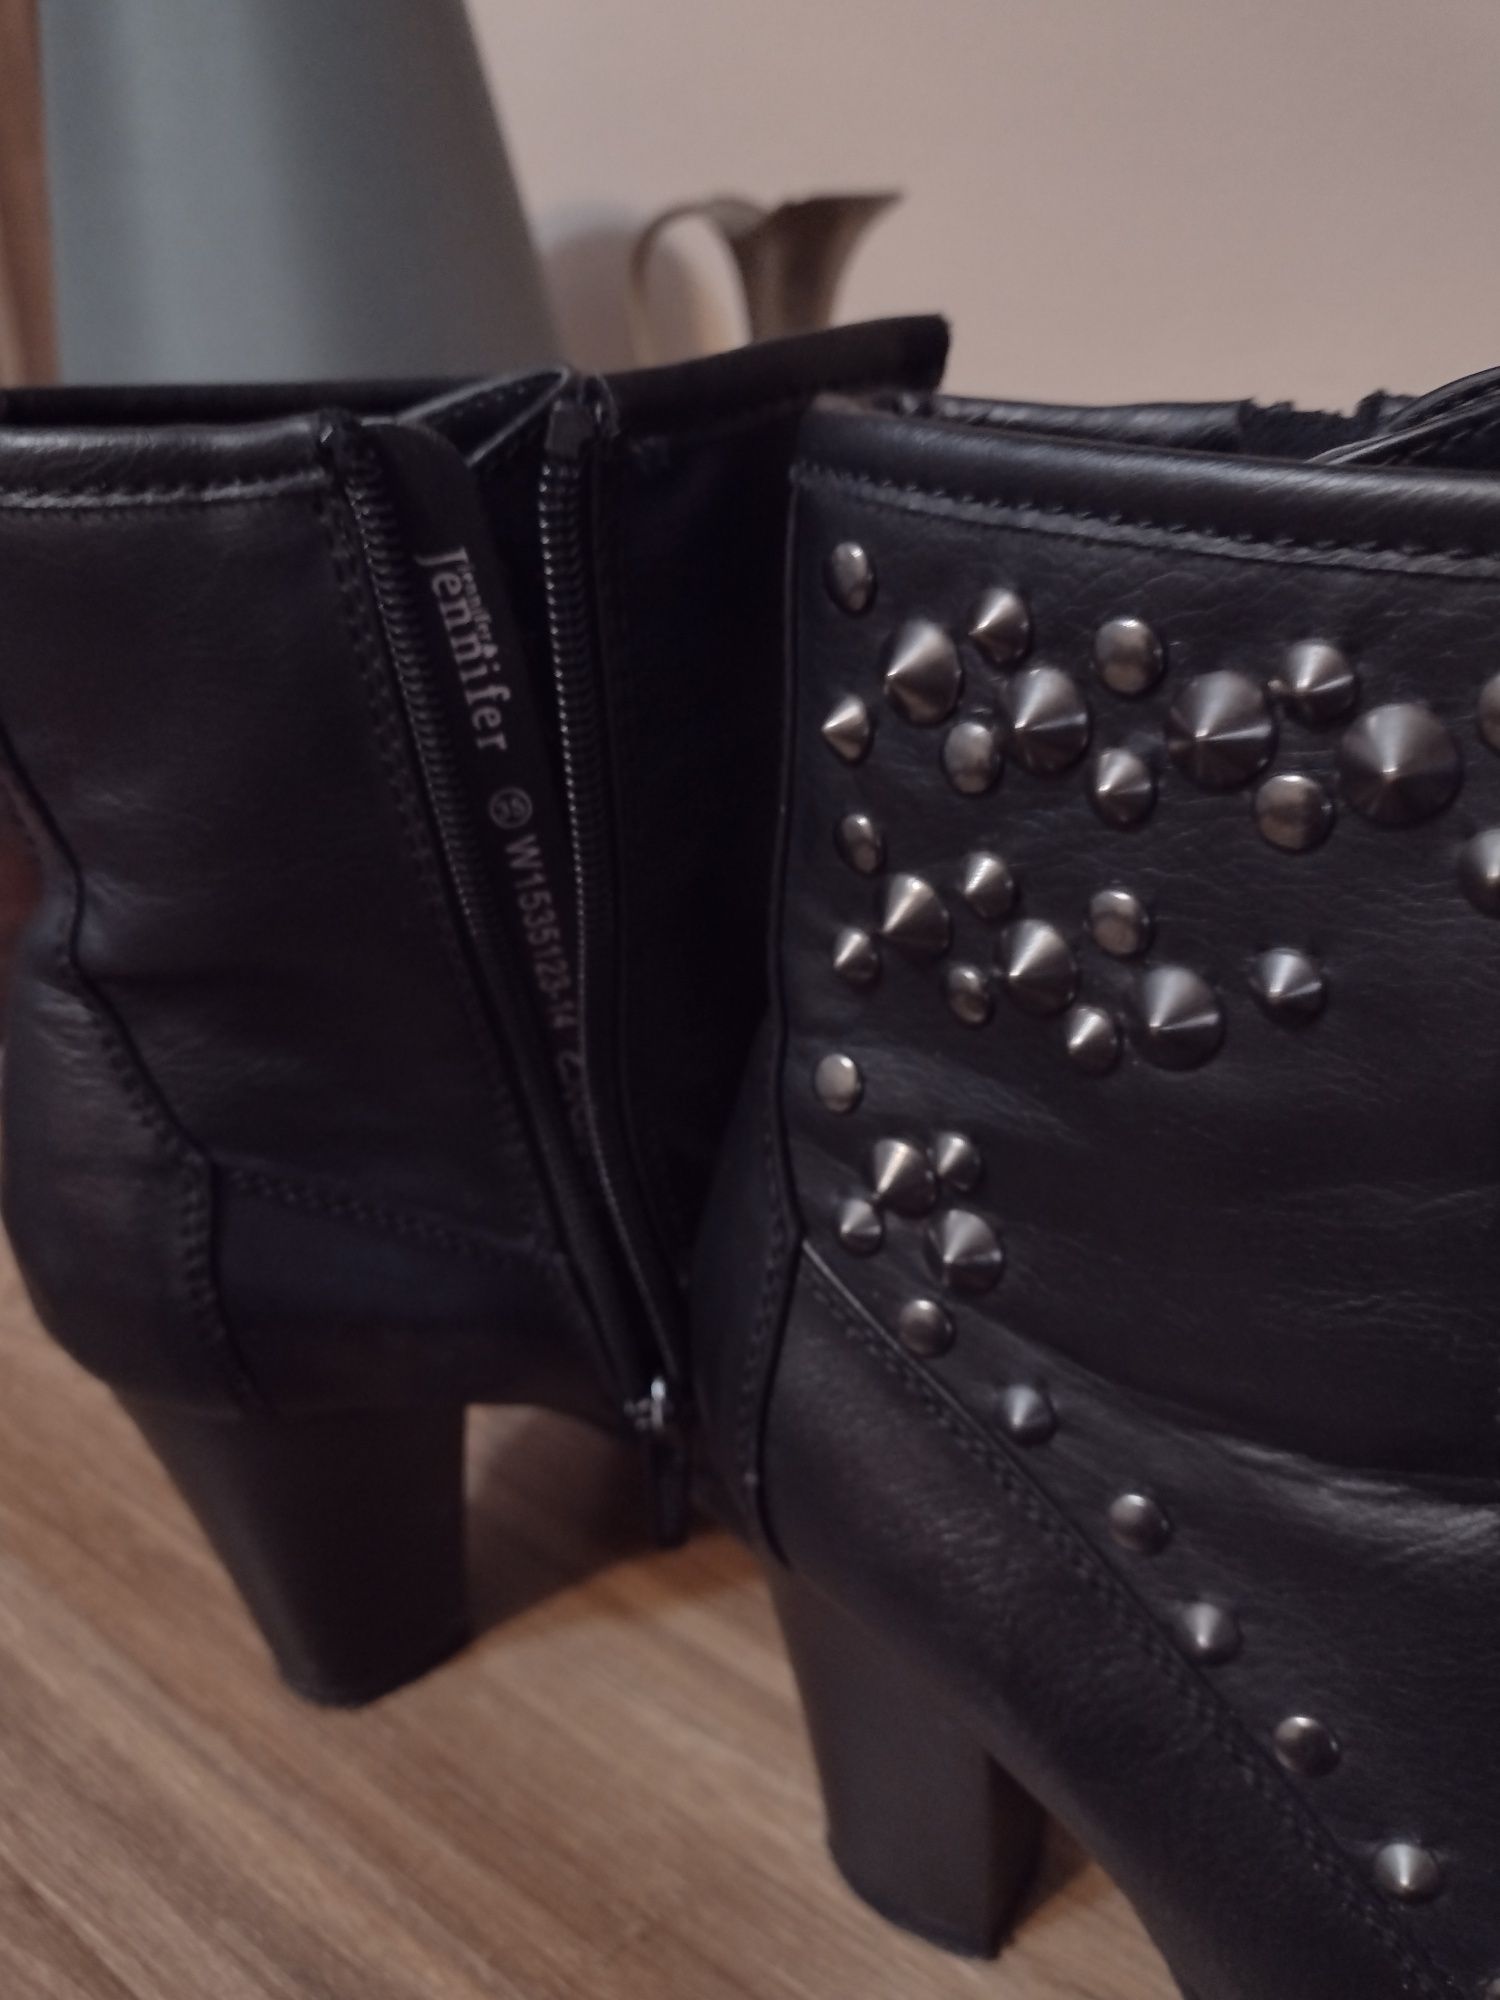 Buty firmy Jennifer ze skòty rozmiar 36 czarne cena 50 zł